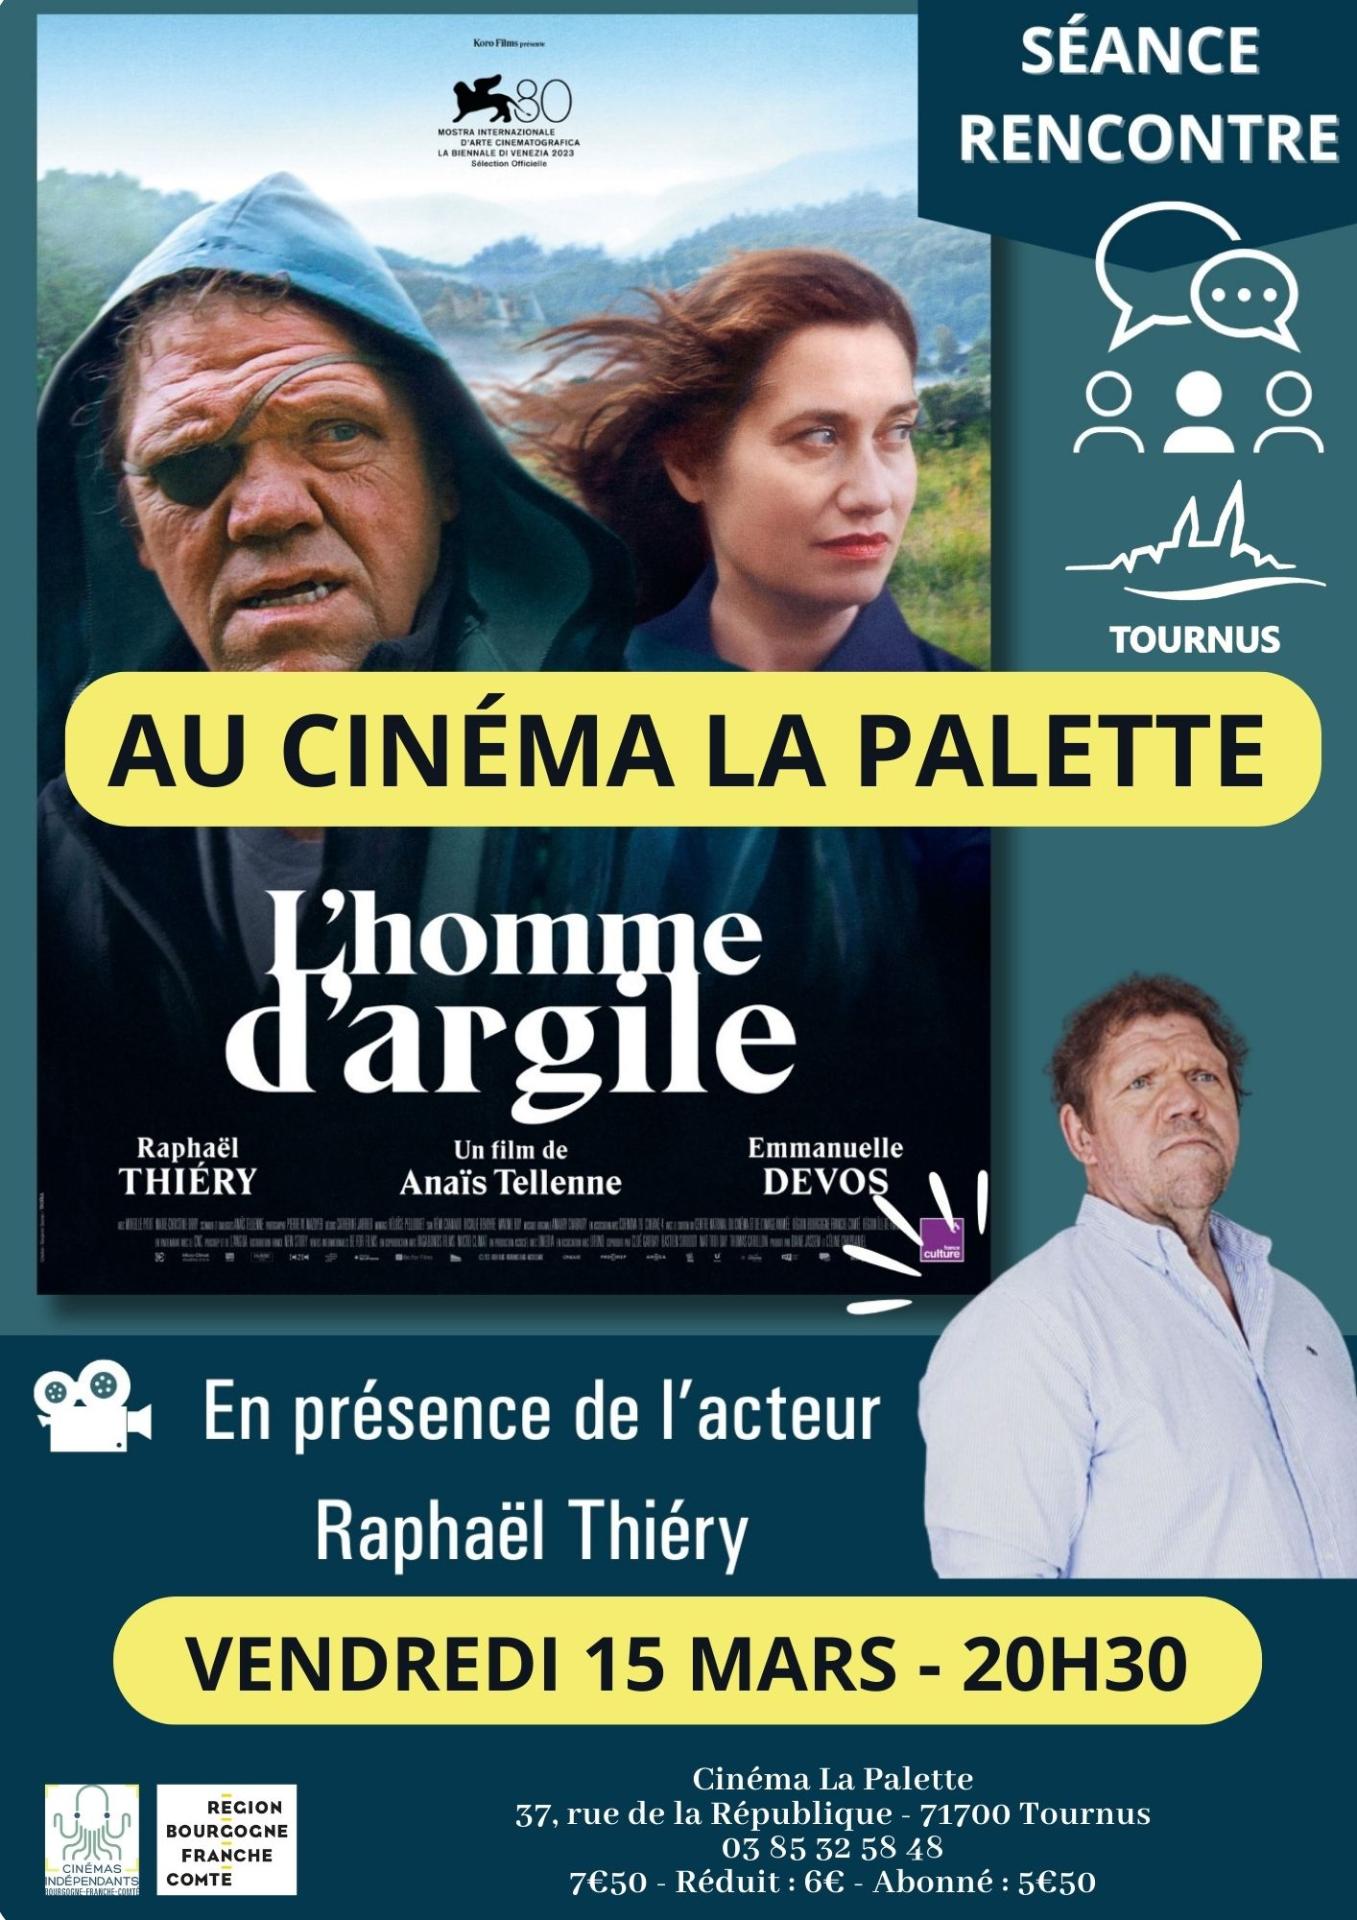 Séance-rencontre « L’homme d’argile » en présence de l’acteur principal Raphaël Thiéry, originaire du Morvan